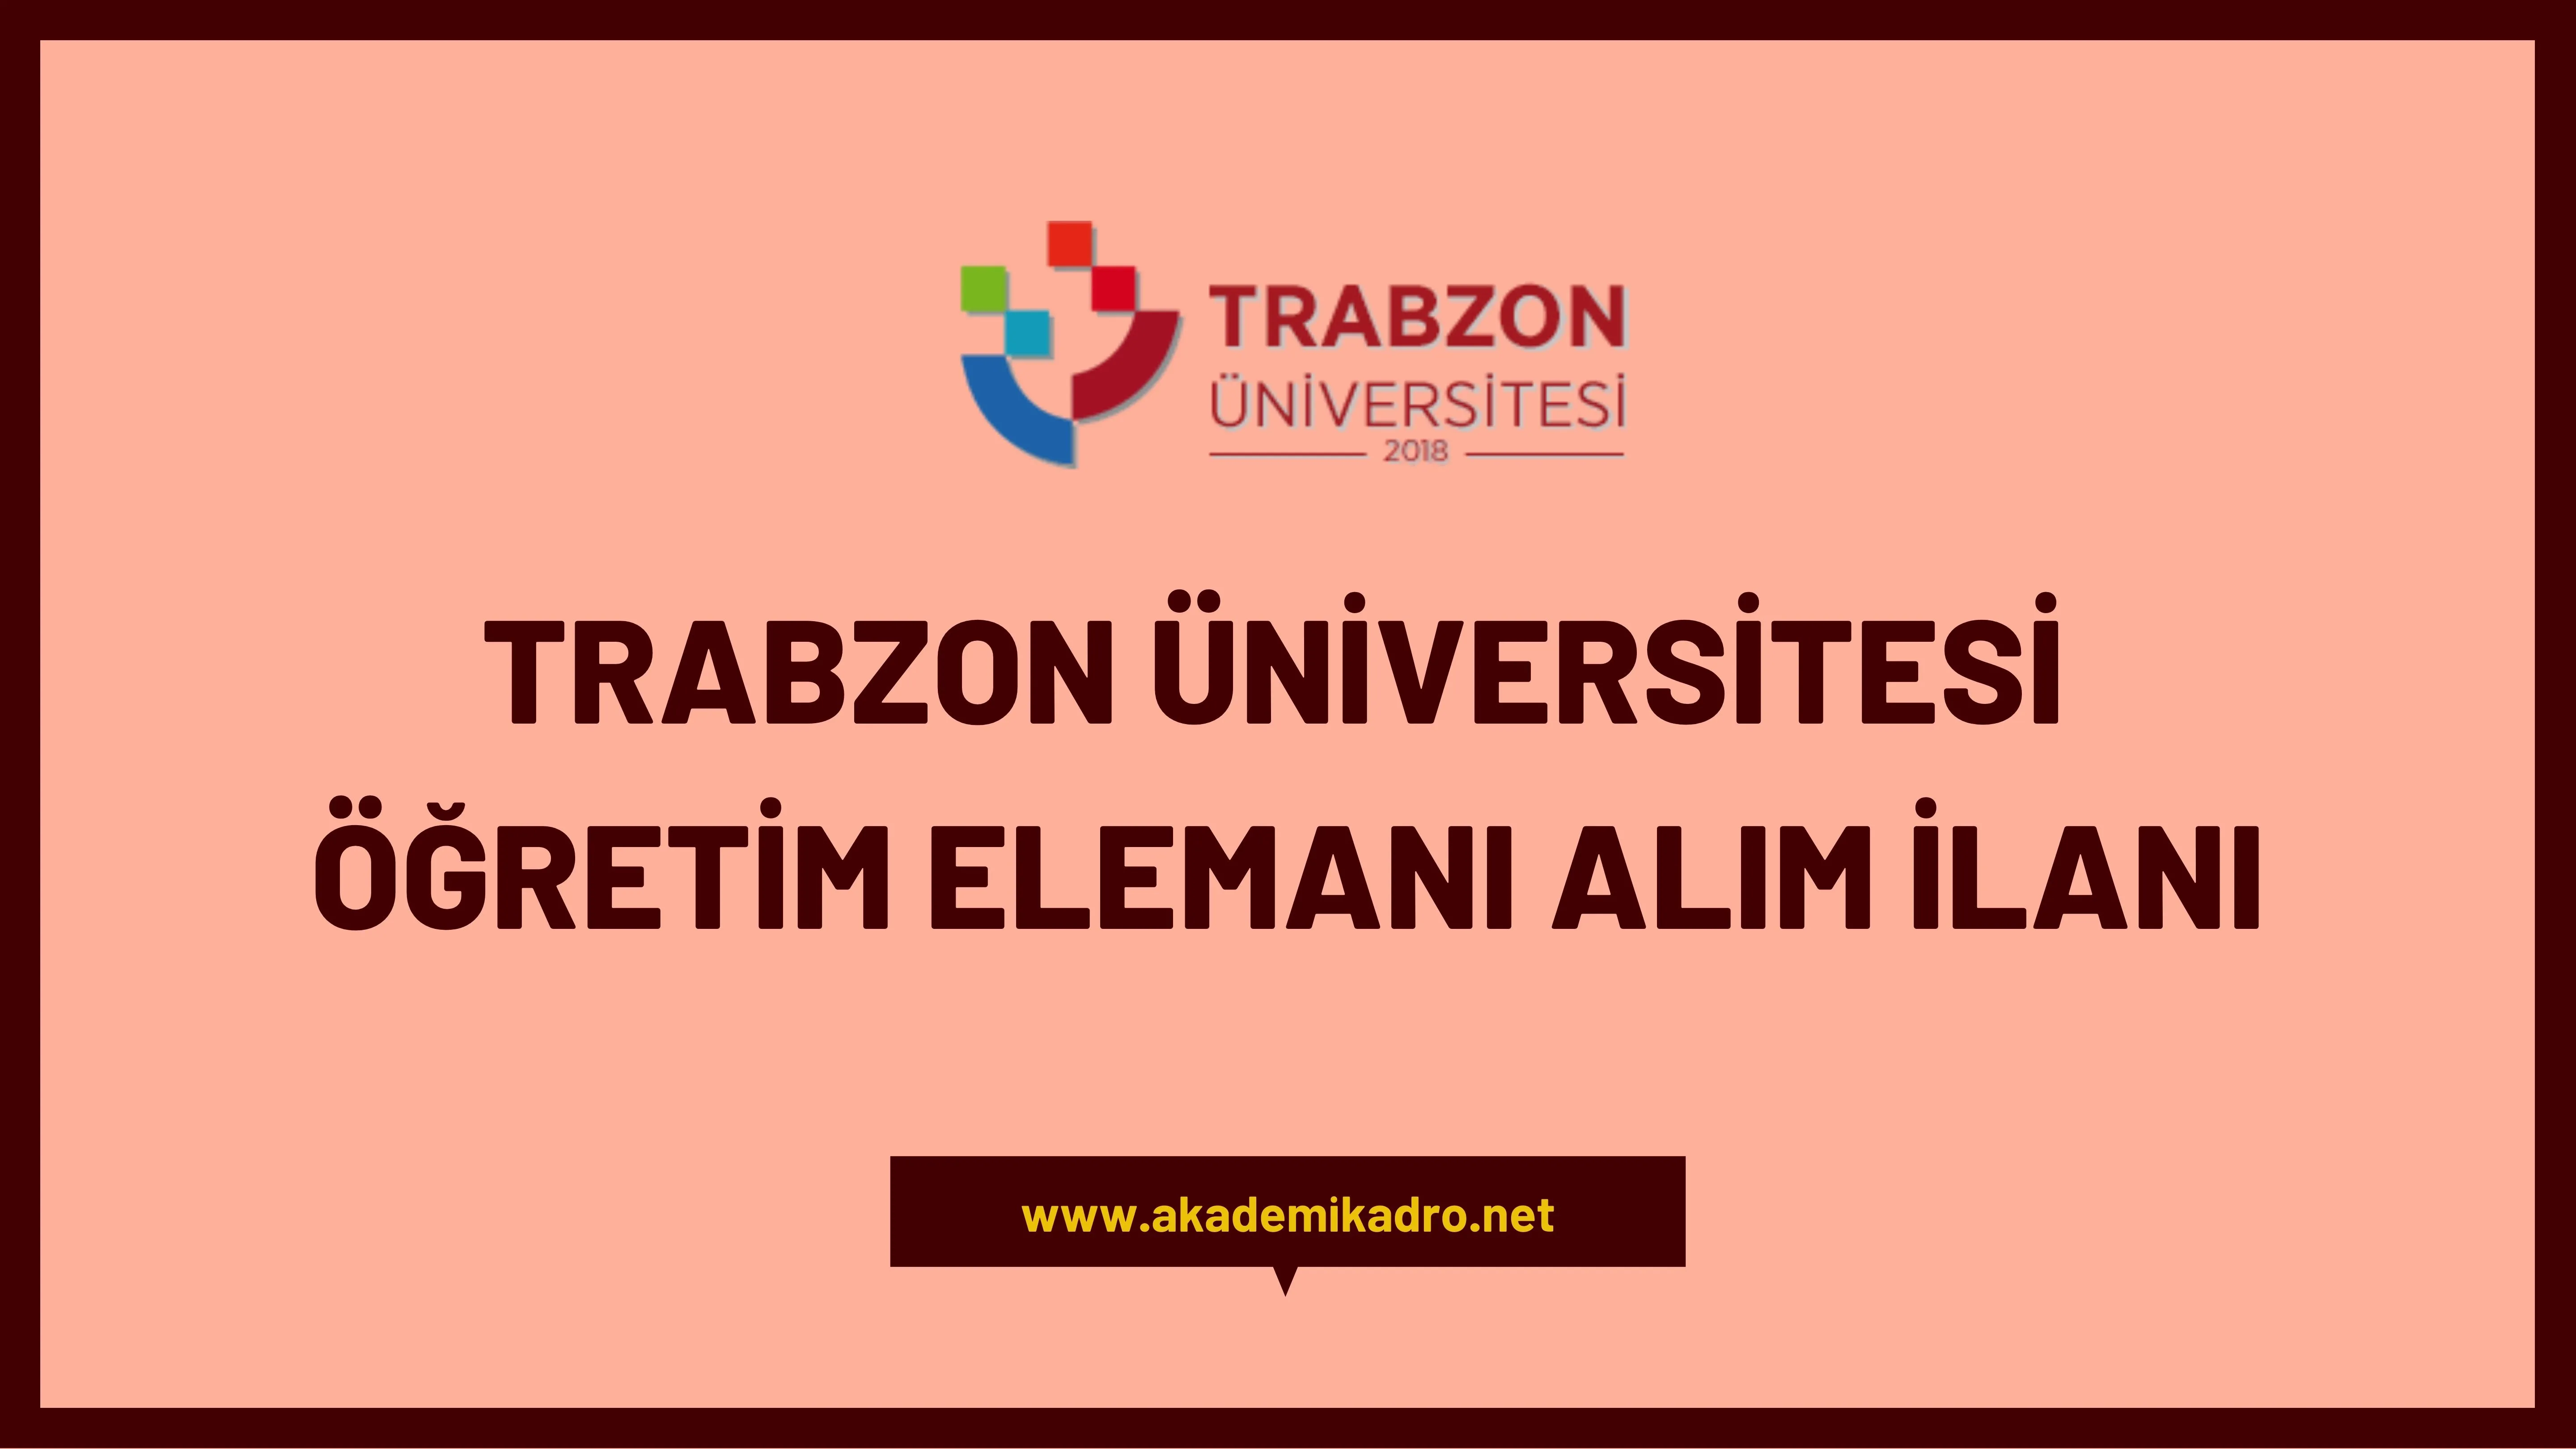 Trabzon Üniversitesi 17 öğretim üyesi, 4 öğretim görevlisi ve 7 Araştırma görevlisi alacaktır.